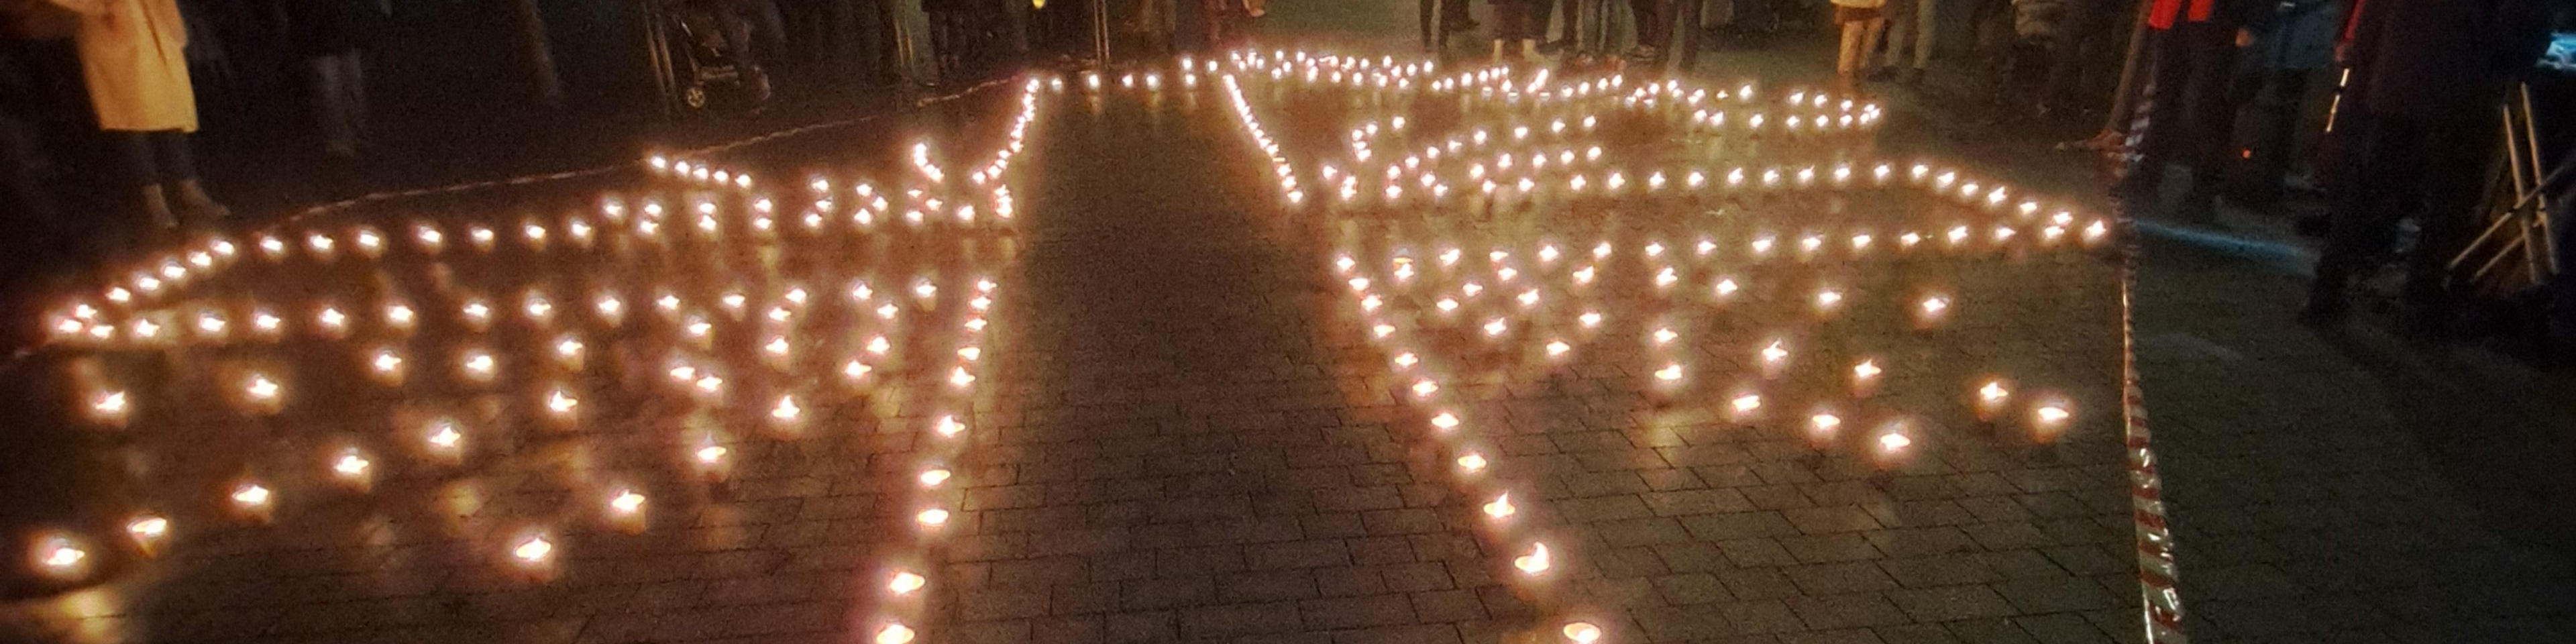 Kerzen auf einem Platz in München formen das Caritas-Flammenkreuz | © Caritas München-Freising